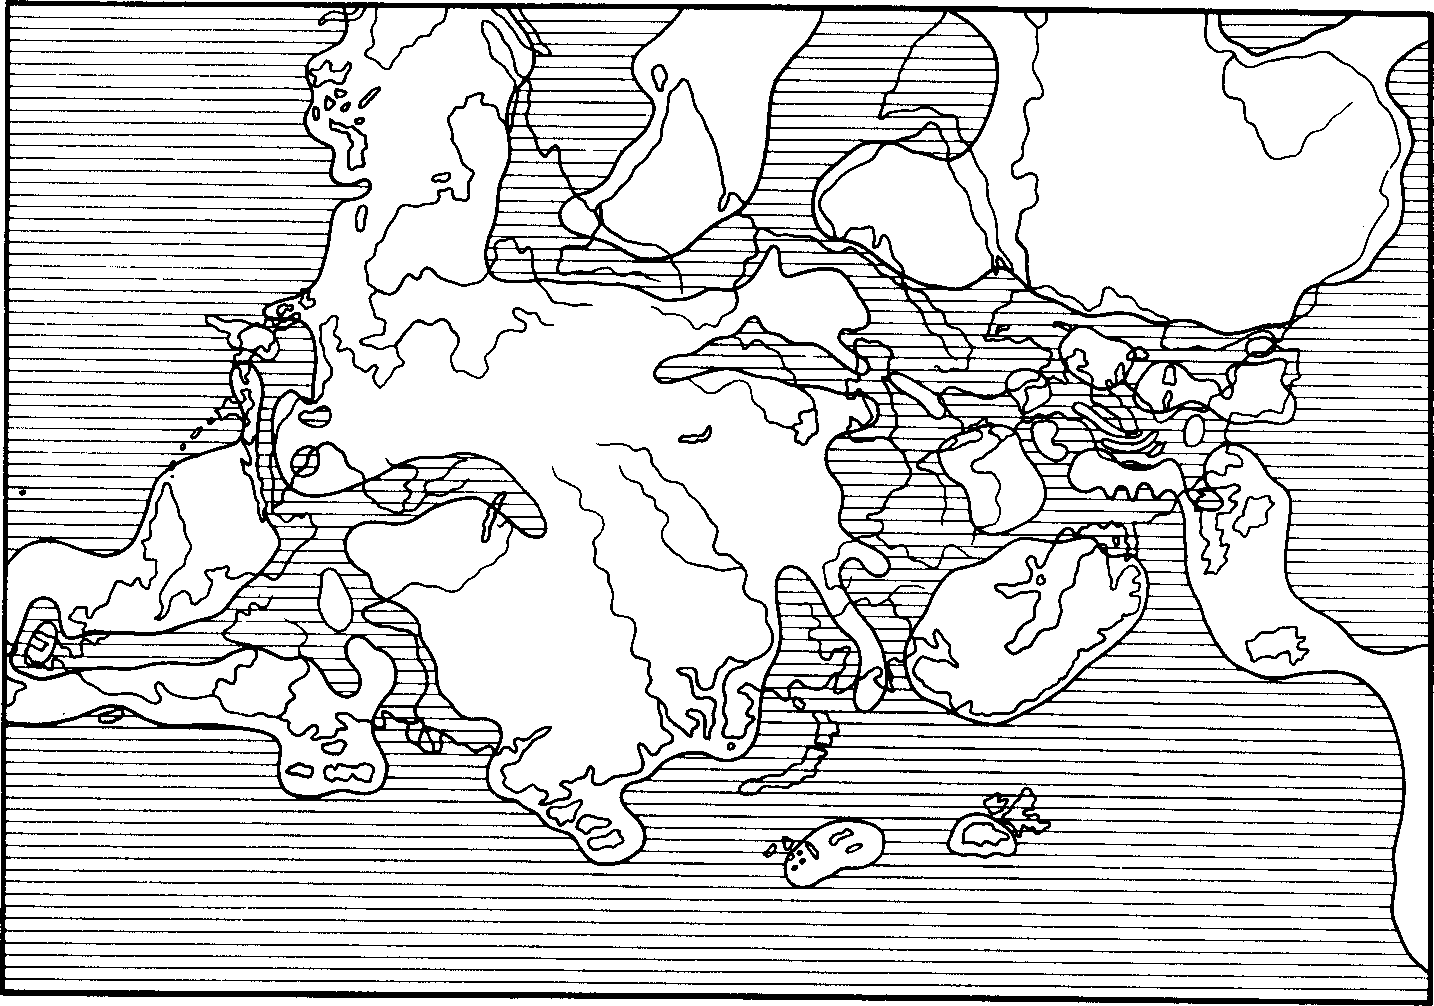 Рис. 45. Схематическая палеогеографическая карта верхнеюрского времени (по Термье, 1952)